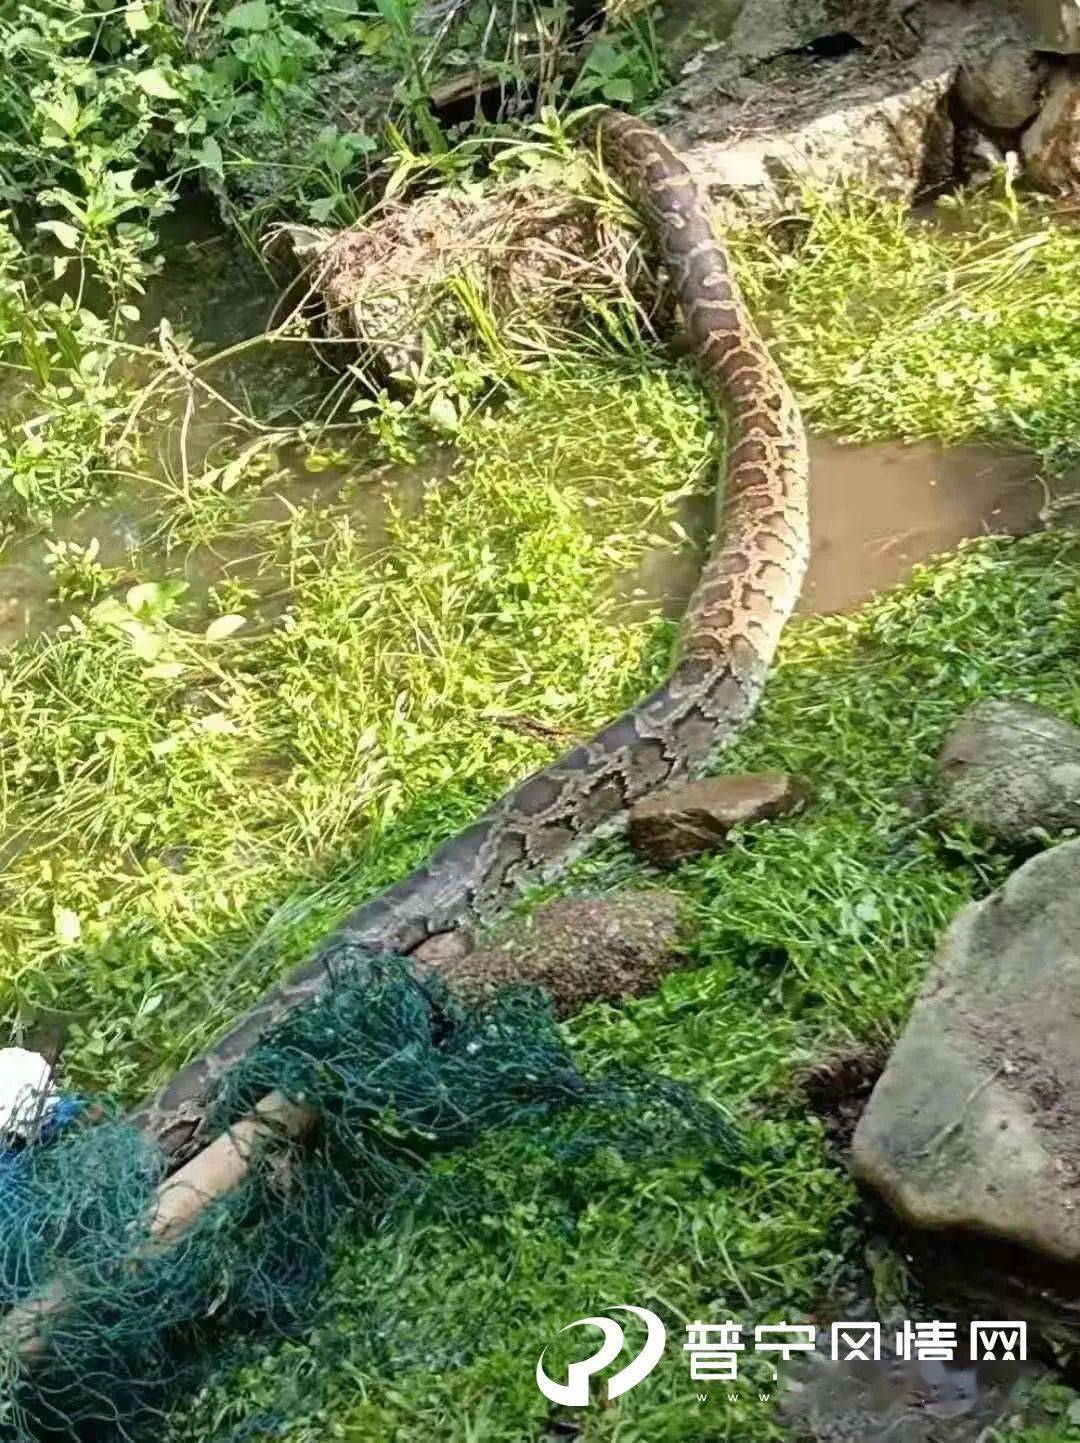 吓人!普宁山区惊现一条数米长大蟒蛇